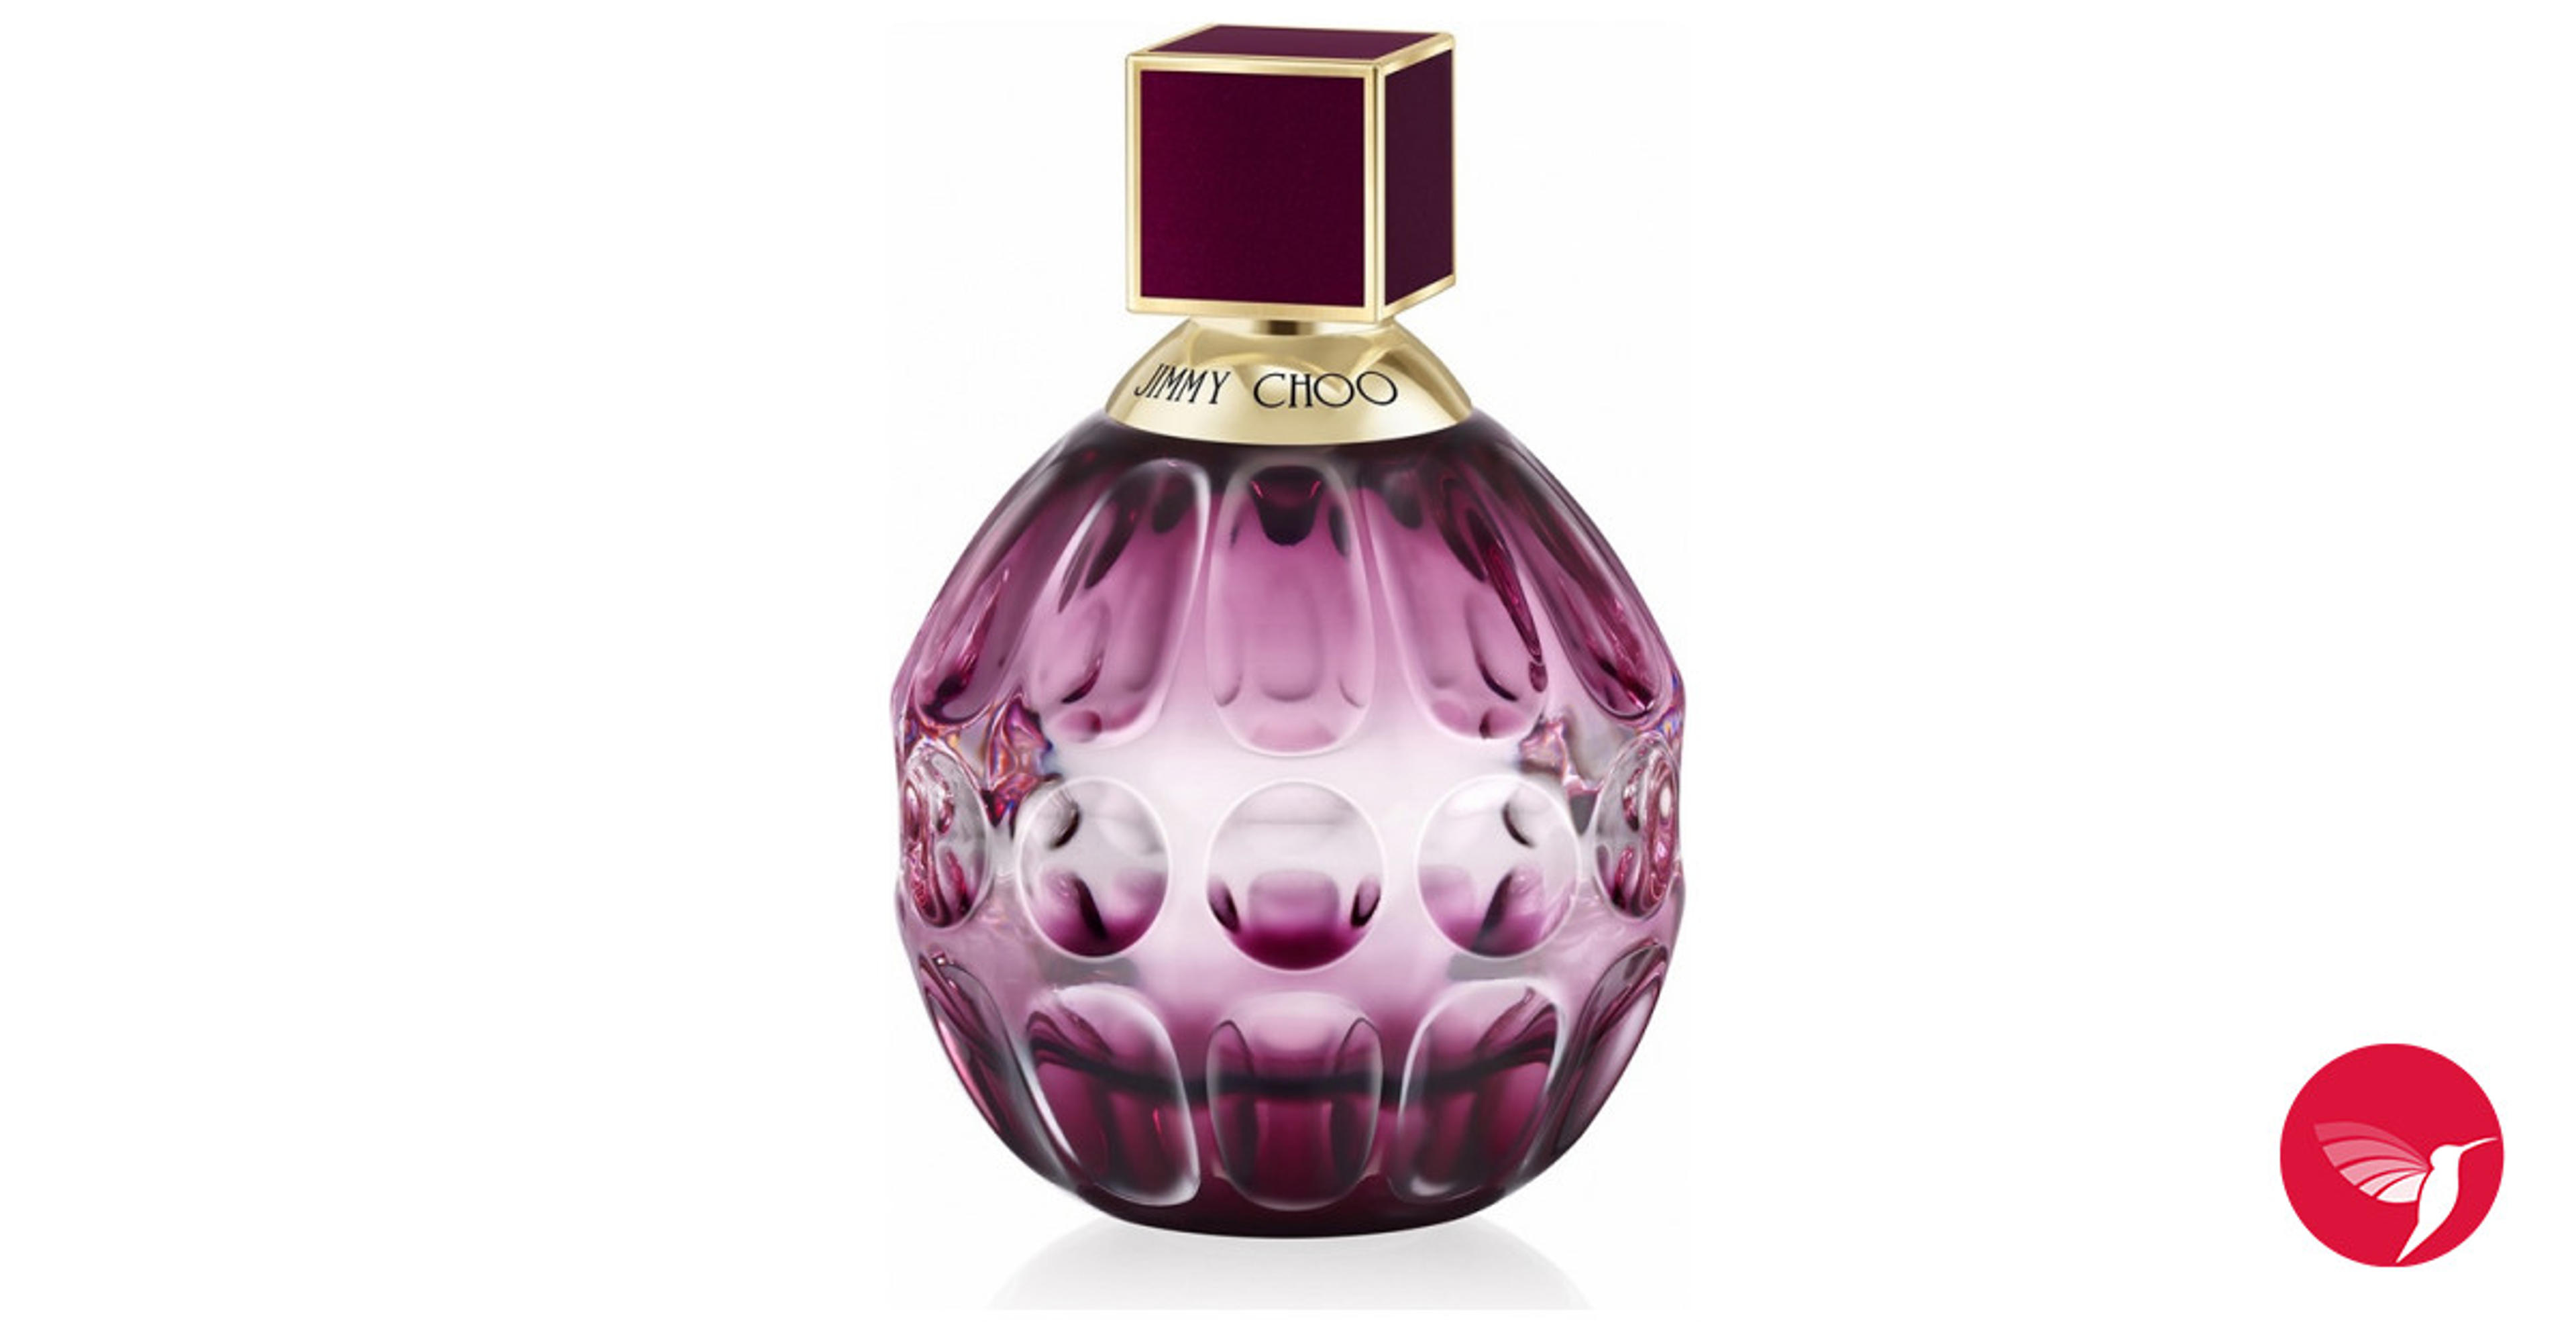 Jimmy Choo Fever Jimmy Choo perfume - a fragrance for women 2018